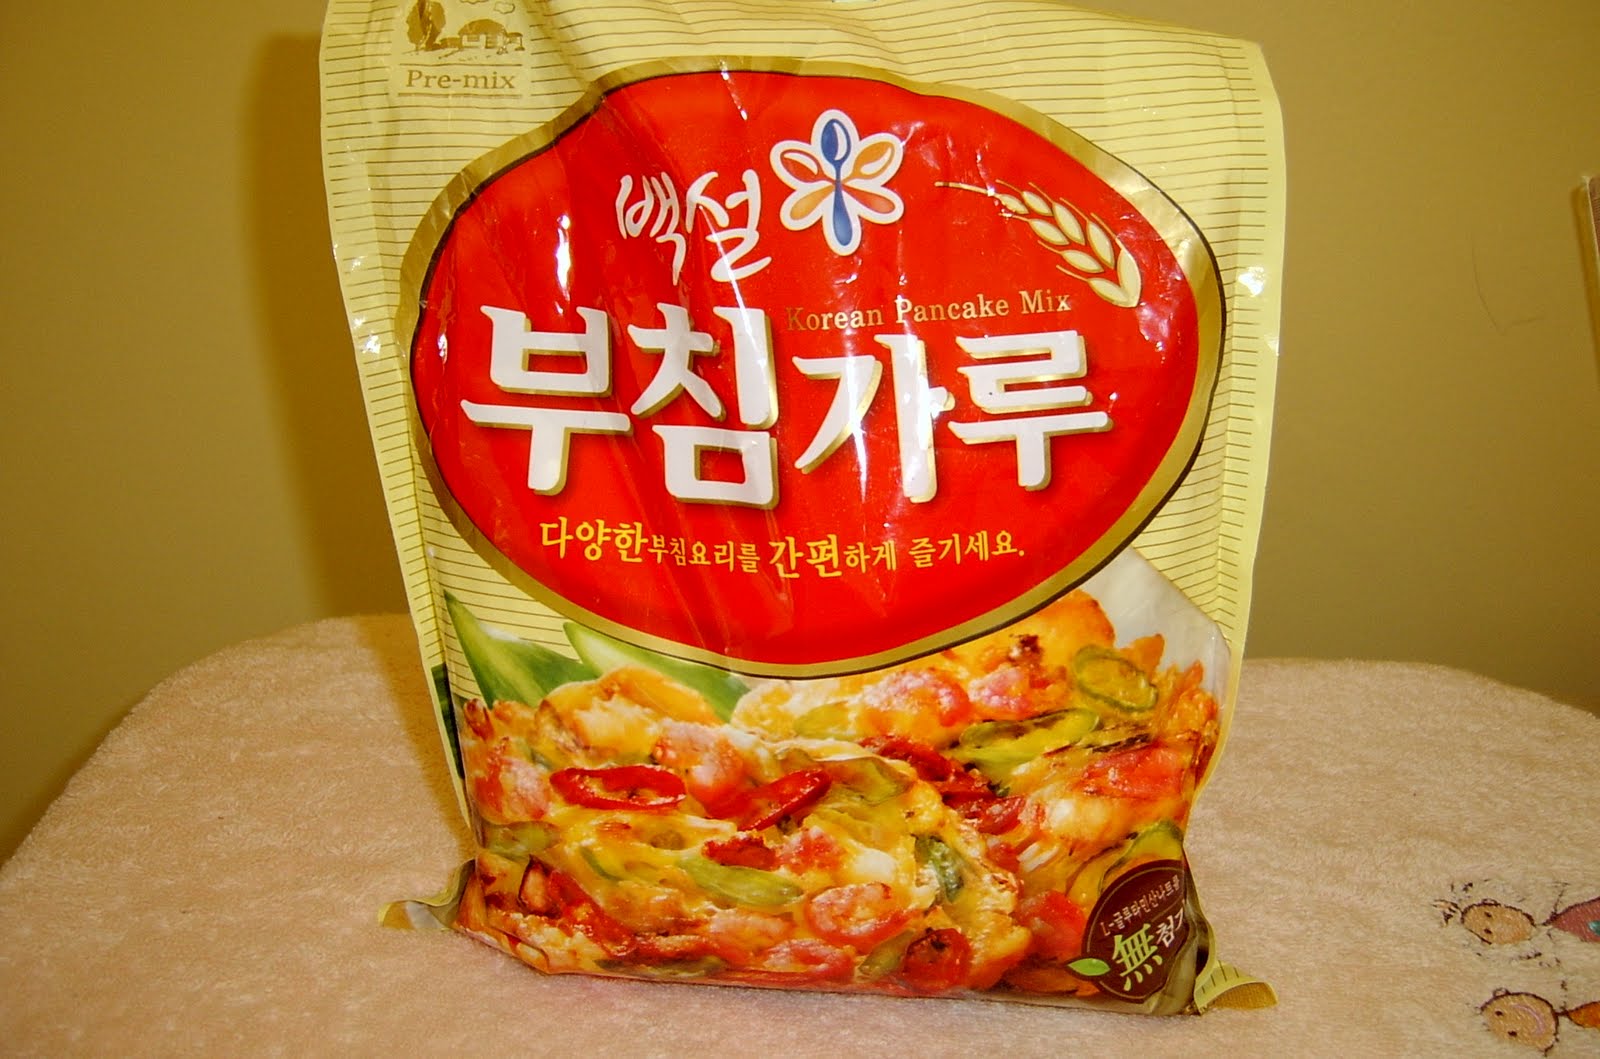 korean pancake mix instructions